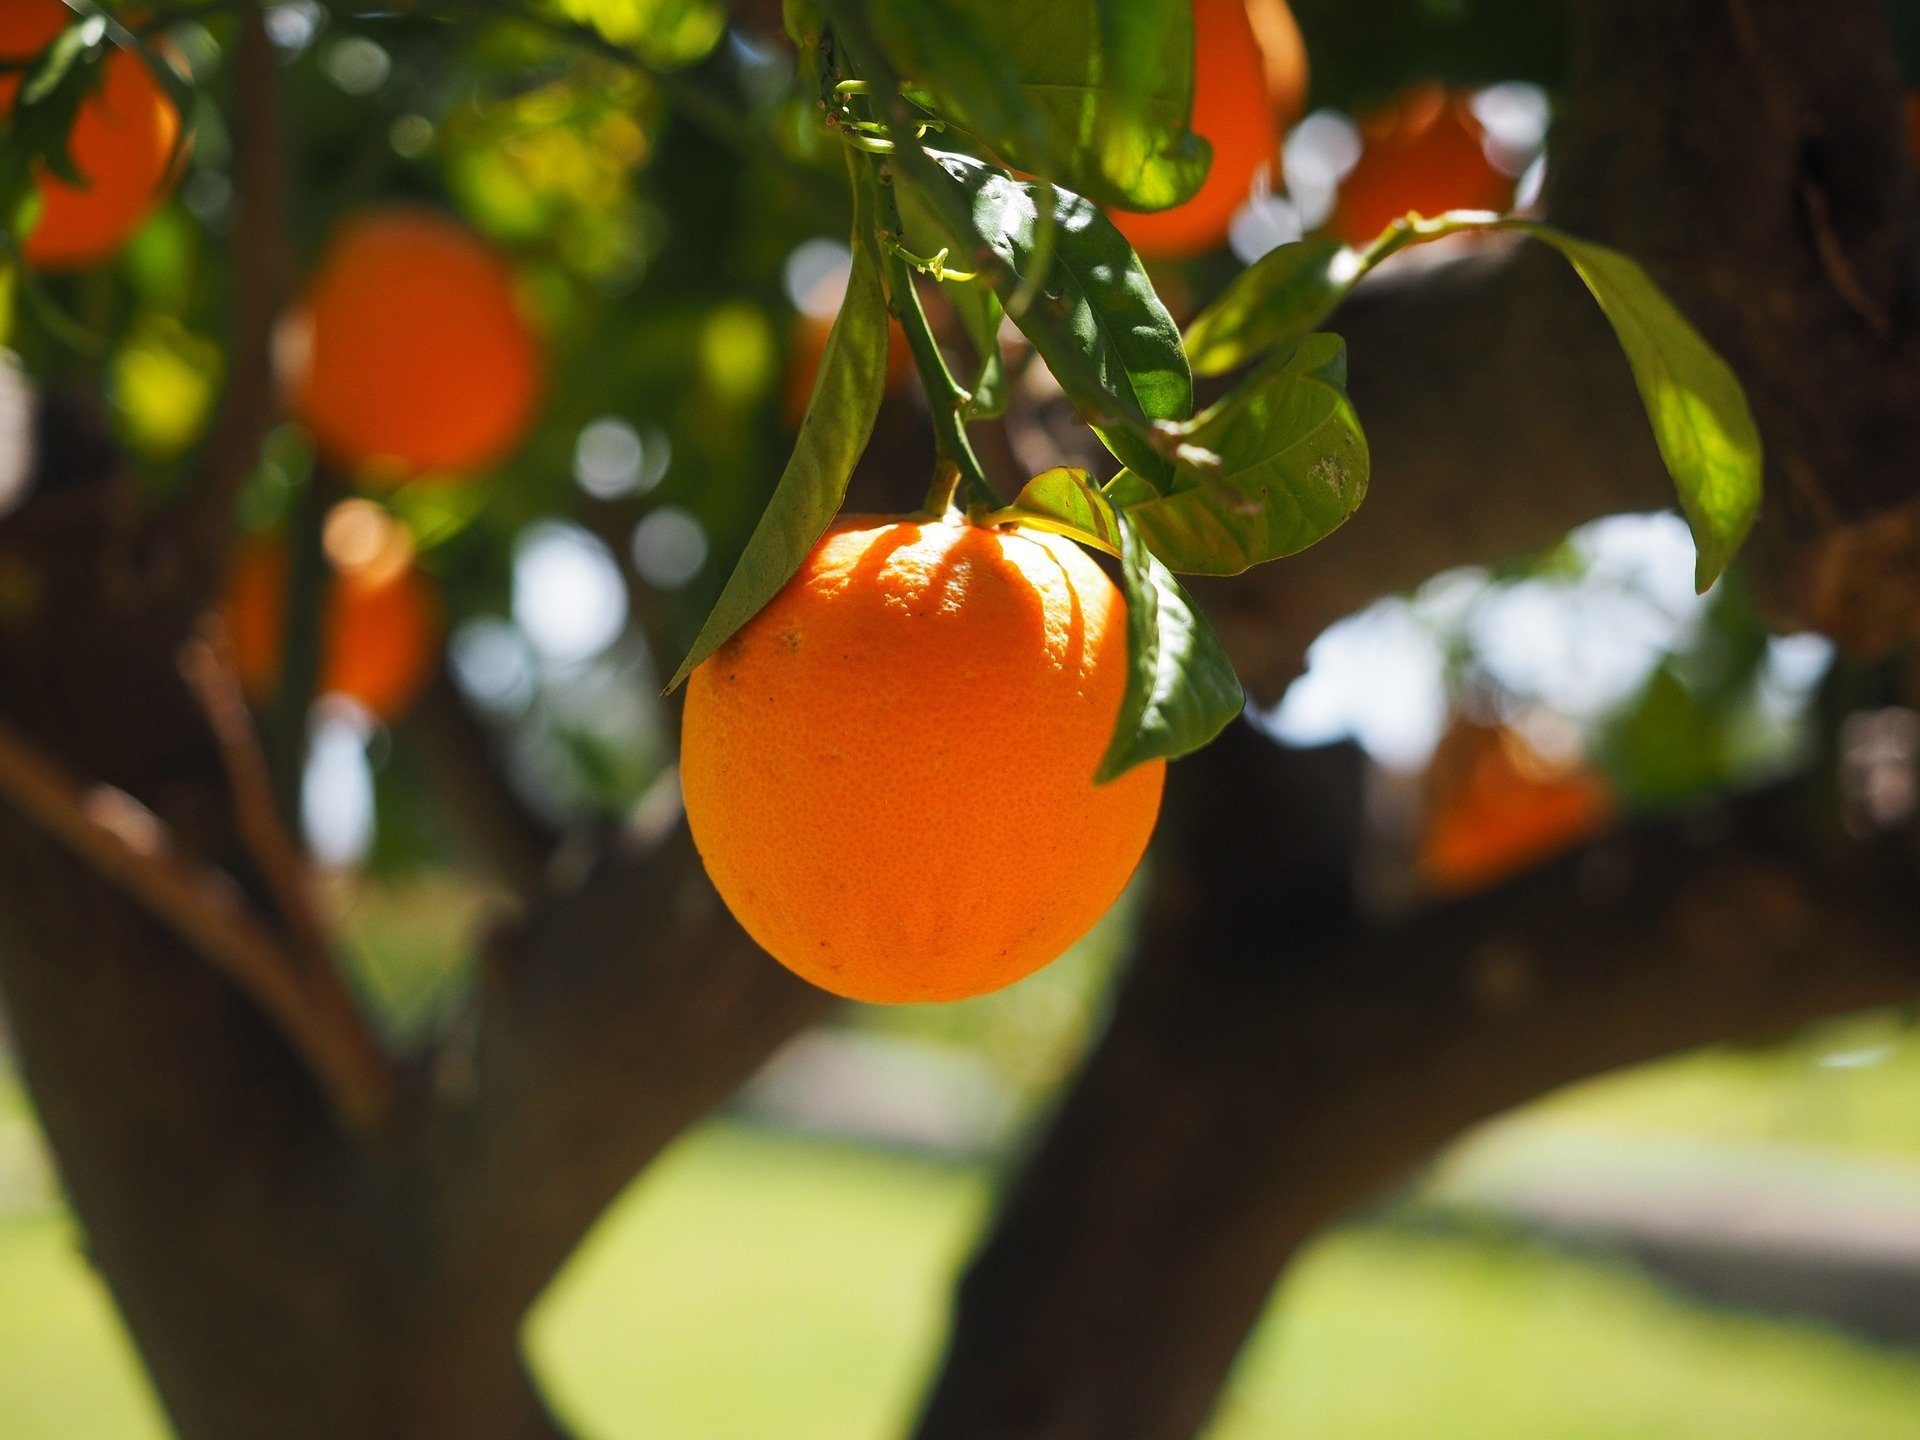 les fruits owoce quiz z francuskiego nauka języka zabawa dla maluszków przedszkole test wiedzy dzieci dwujęzyczne słówka słownictwo pomarańcza l'orange